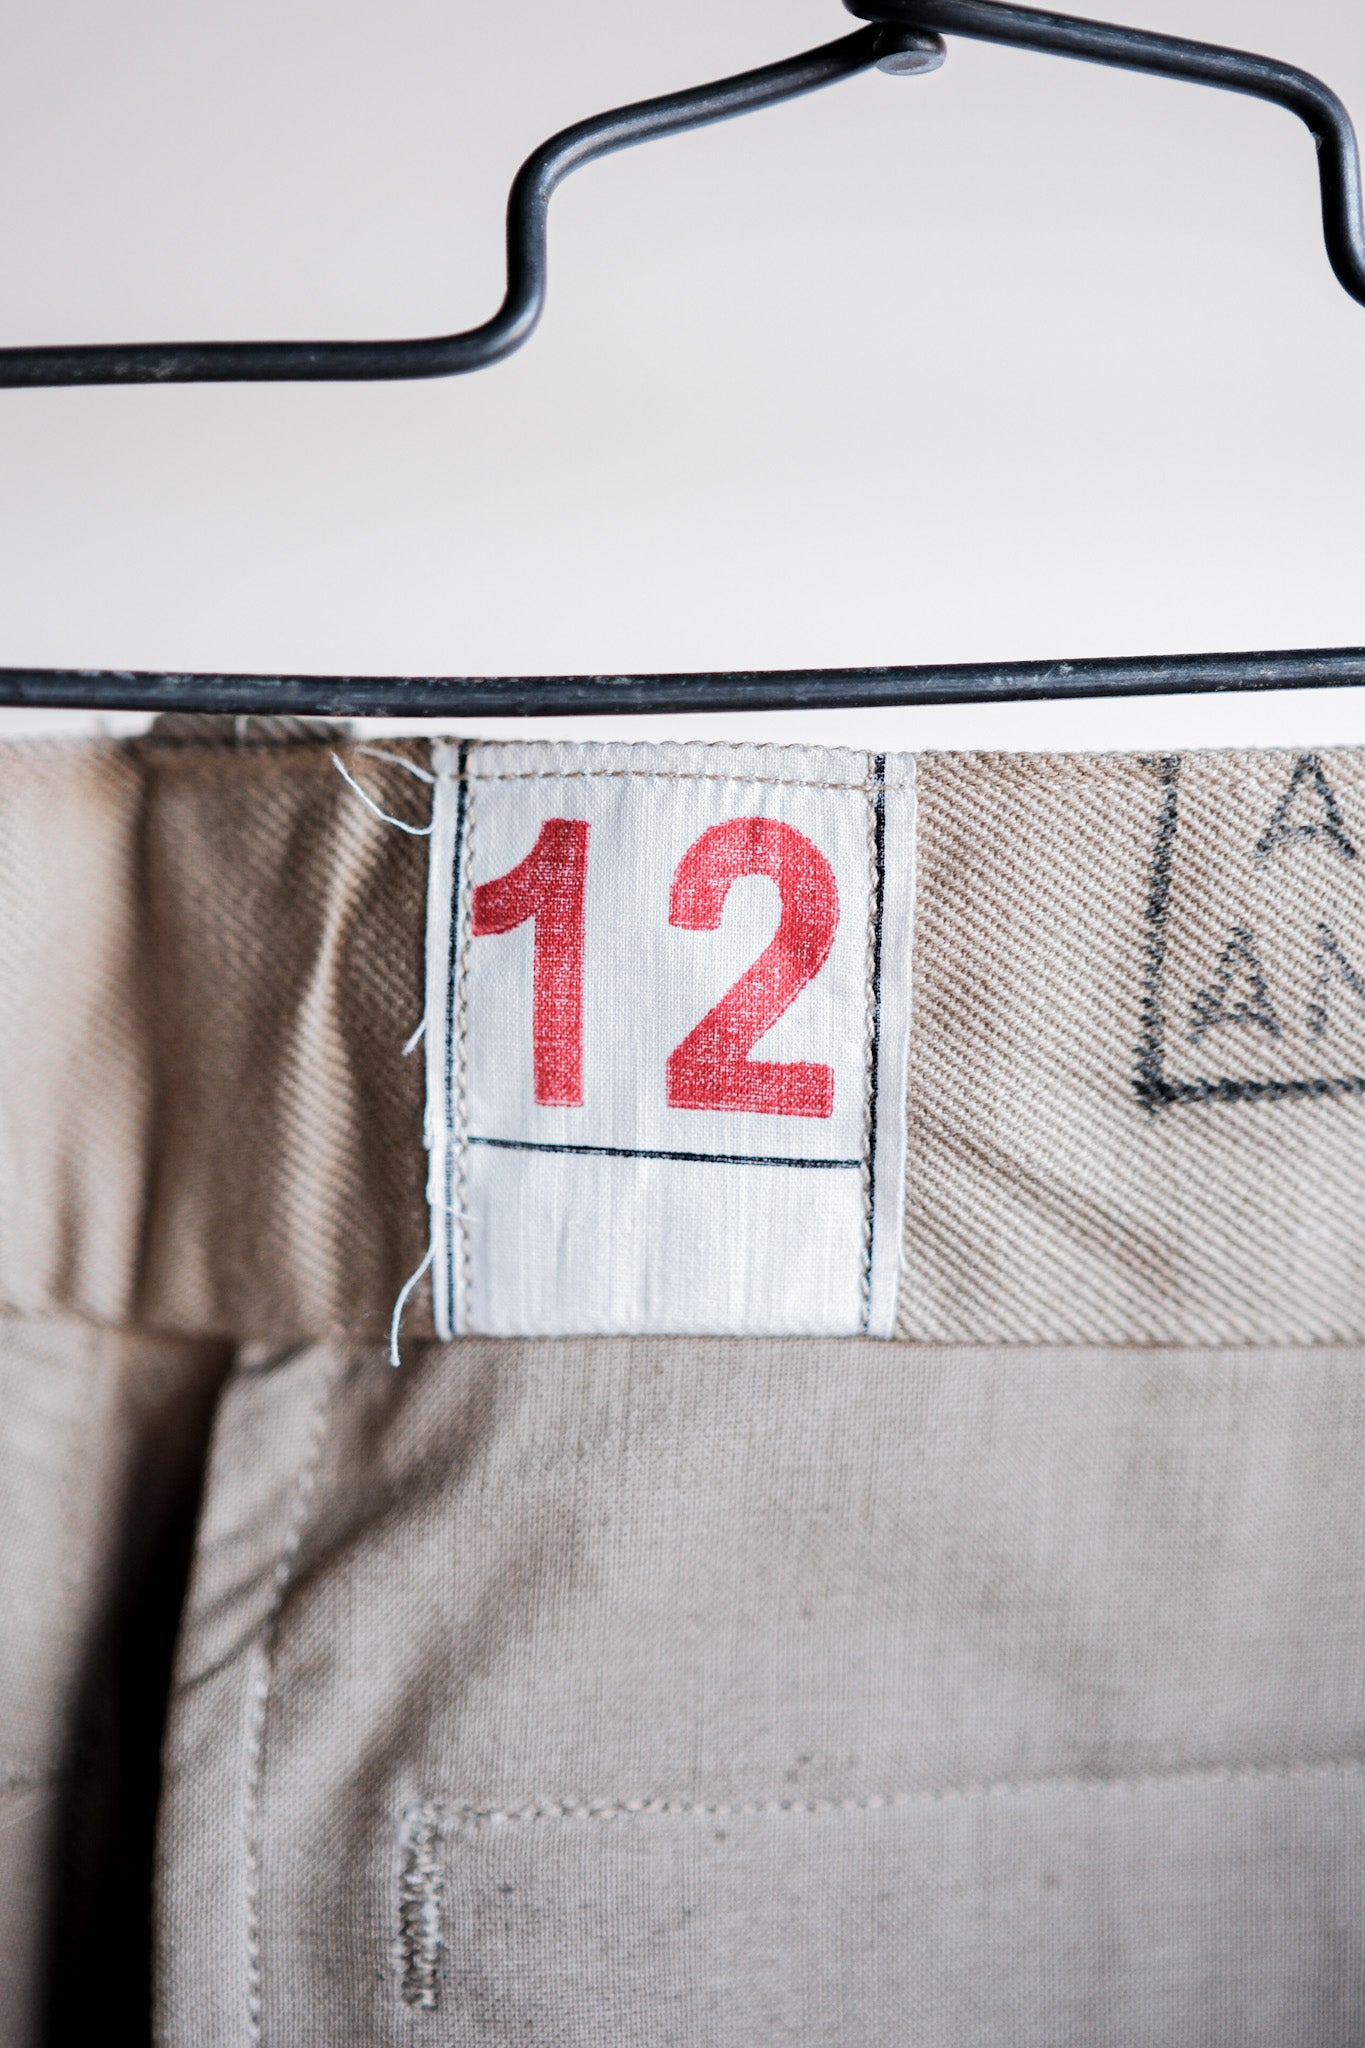 [〜50年代]法國陸軍M52 Chino褲子大小。12“死庫存”